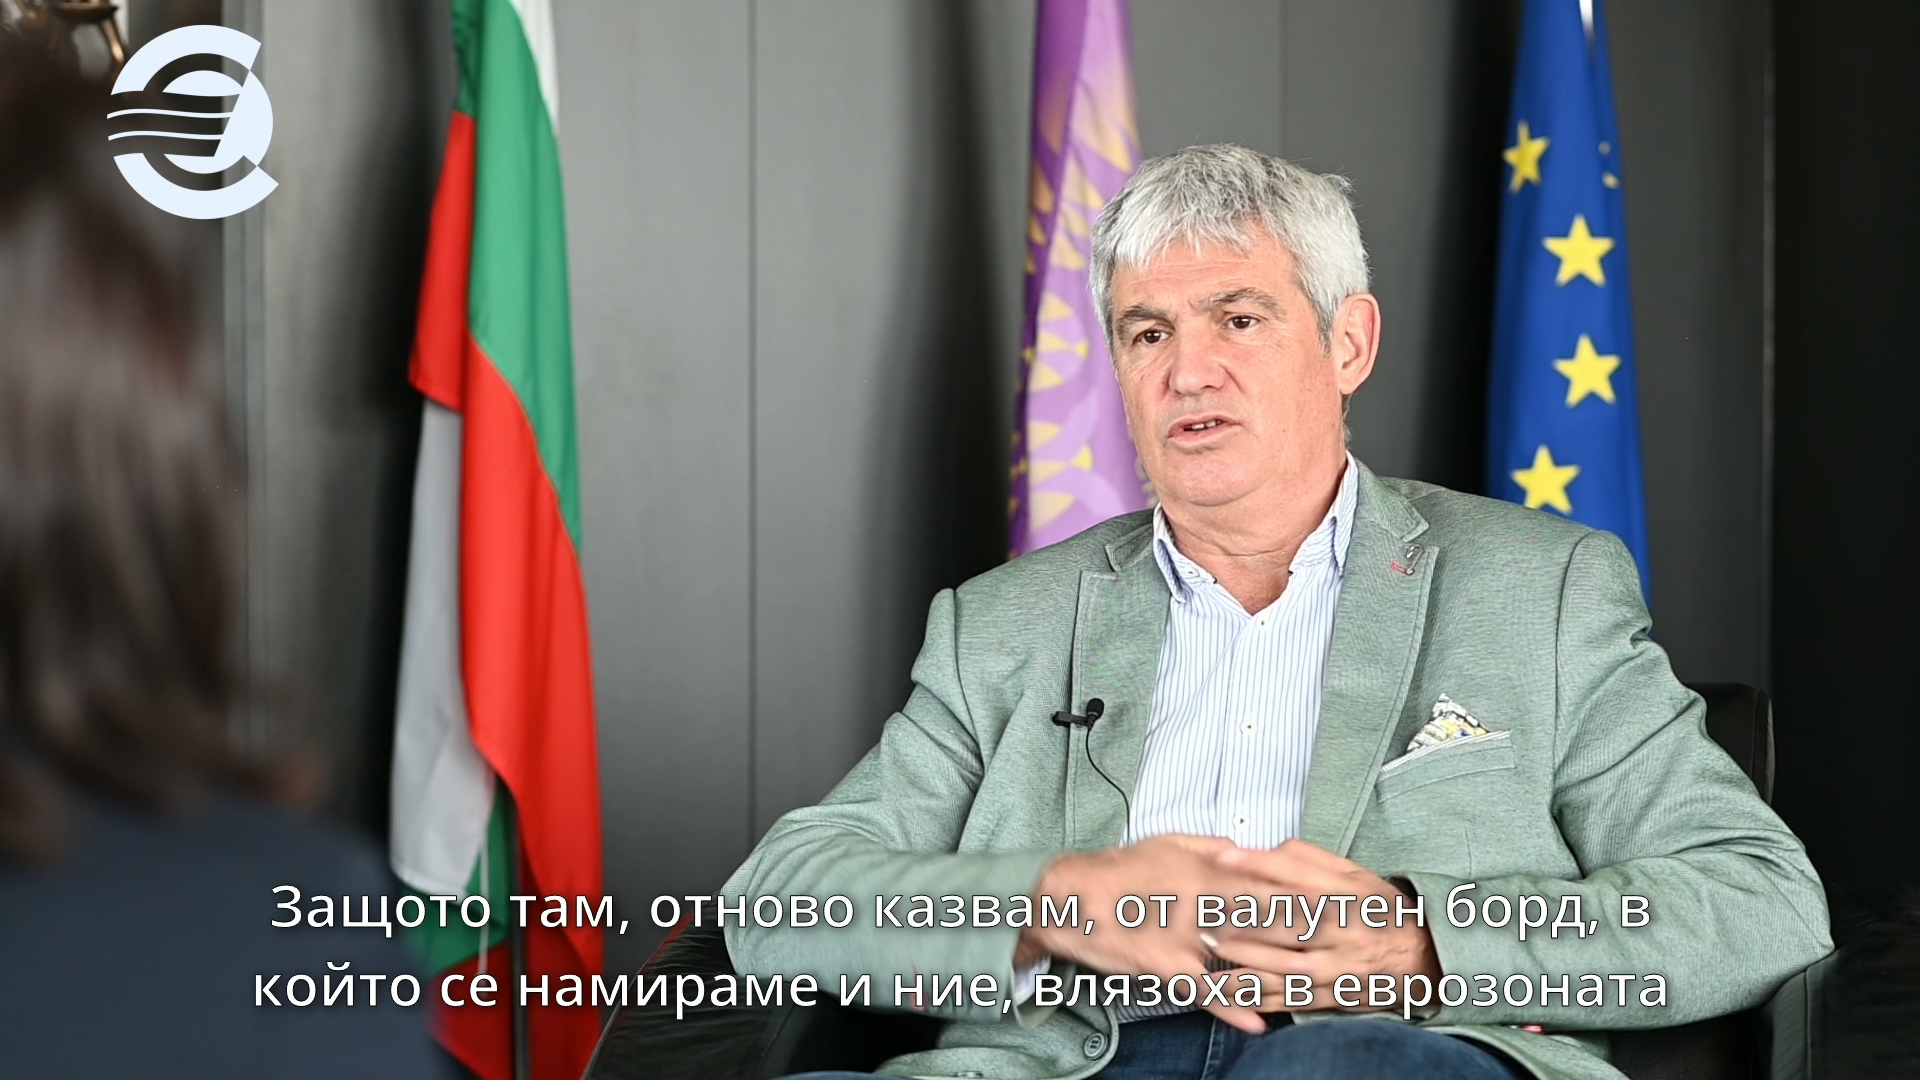 Пламен Димитров, президент на Конфедерацията на независимите синдикати в България: Очакваме ускорен растеж на доходите в България след влизане в еврозоната